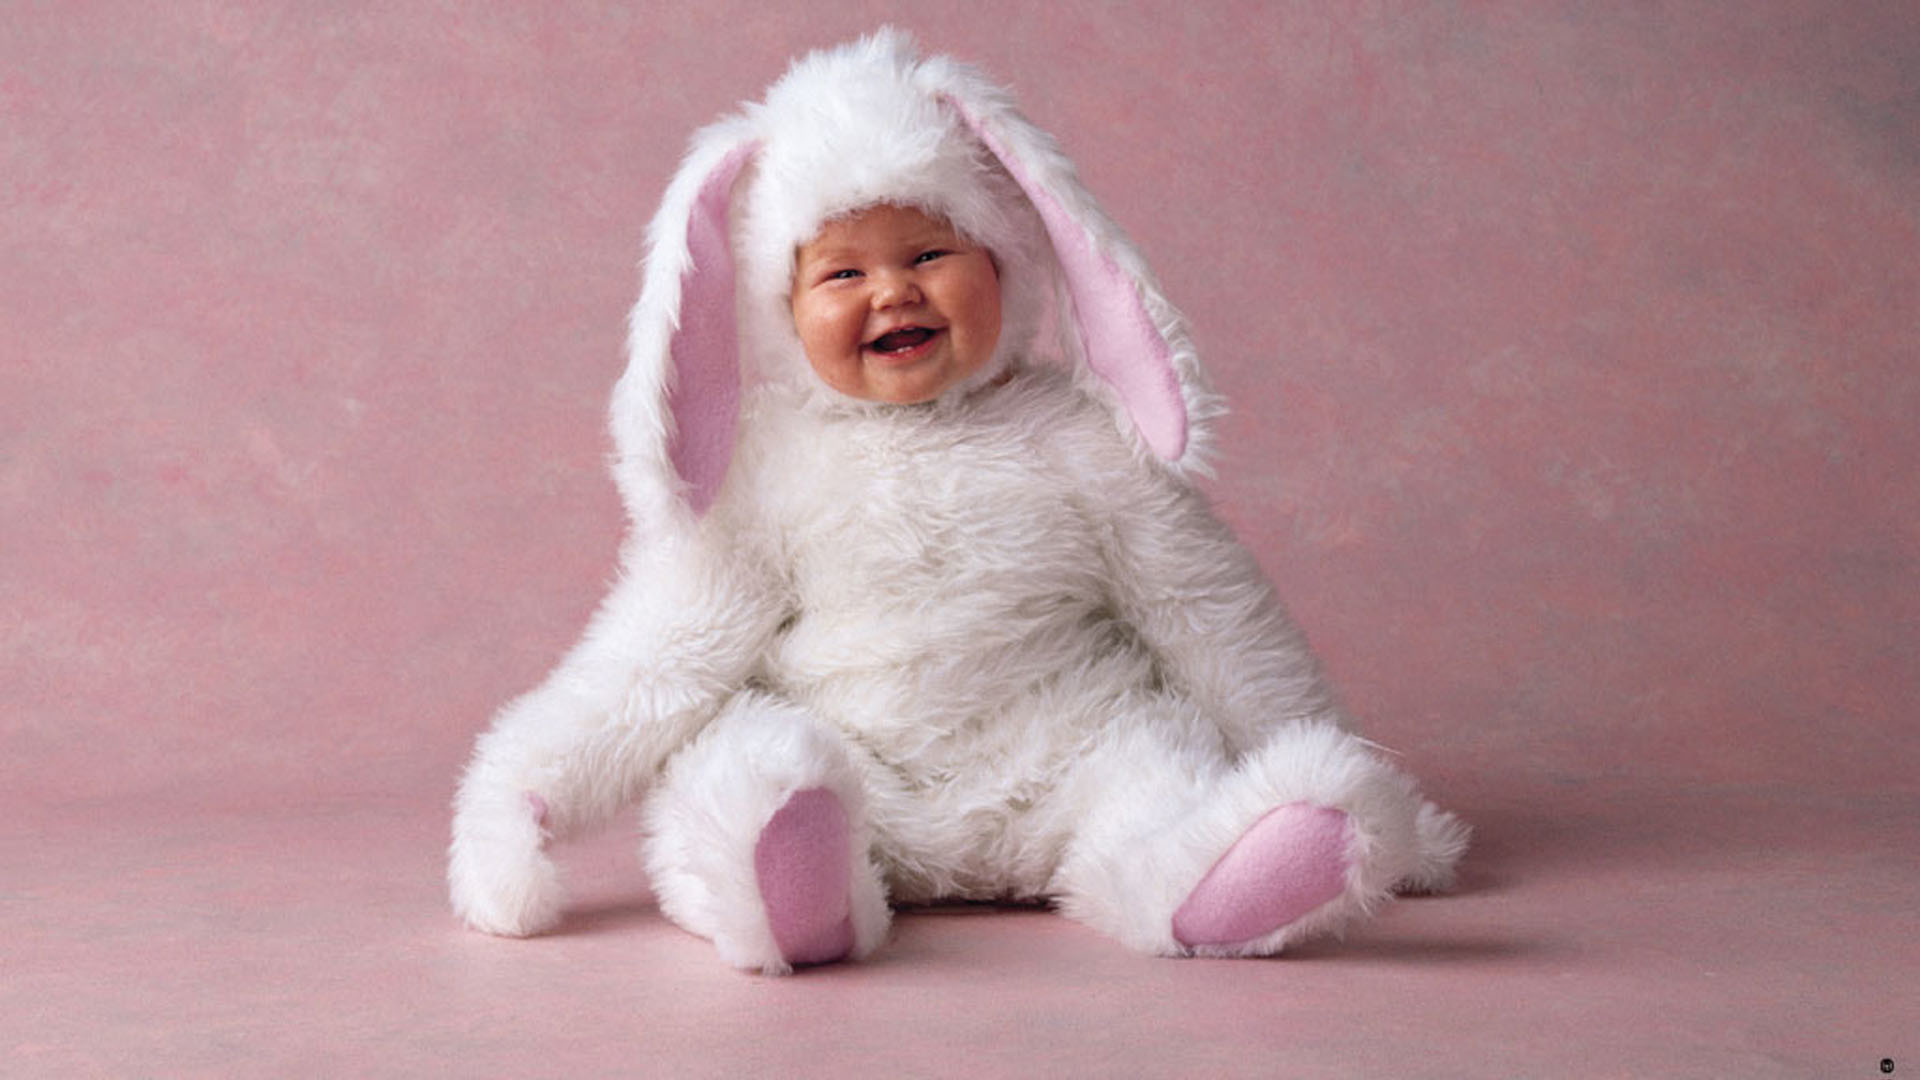 1920x1080 Baby Costume Rabbit Wallpaper Wallpaper